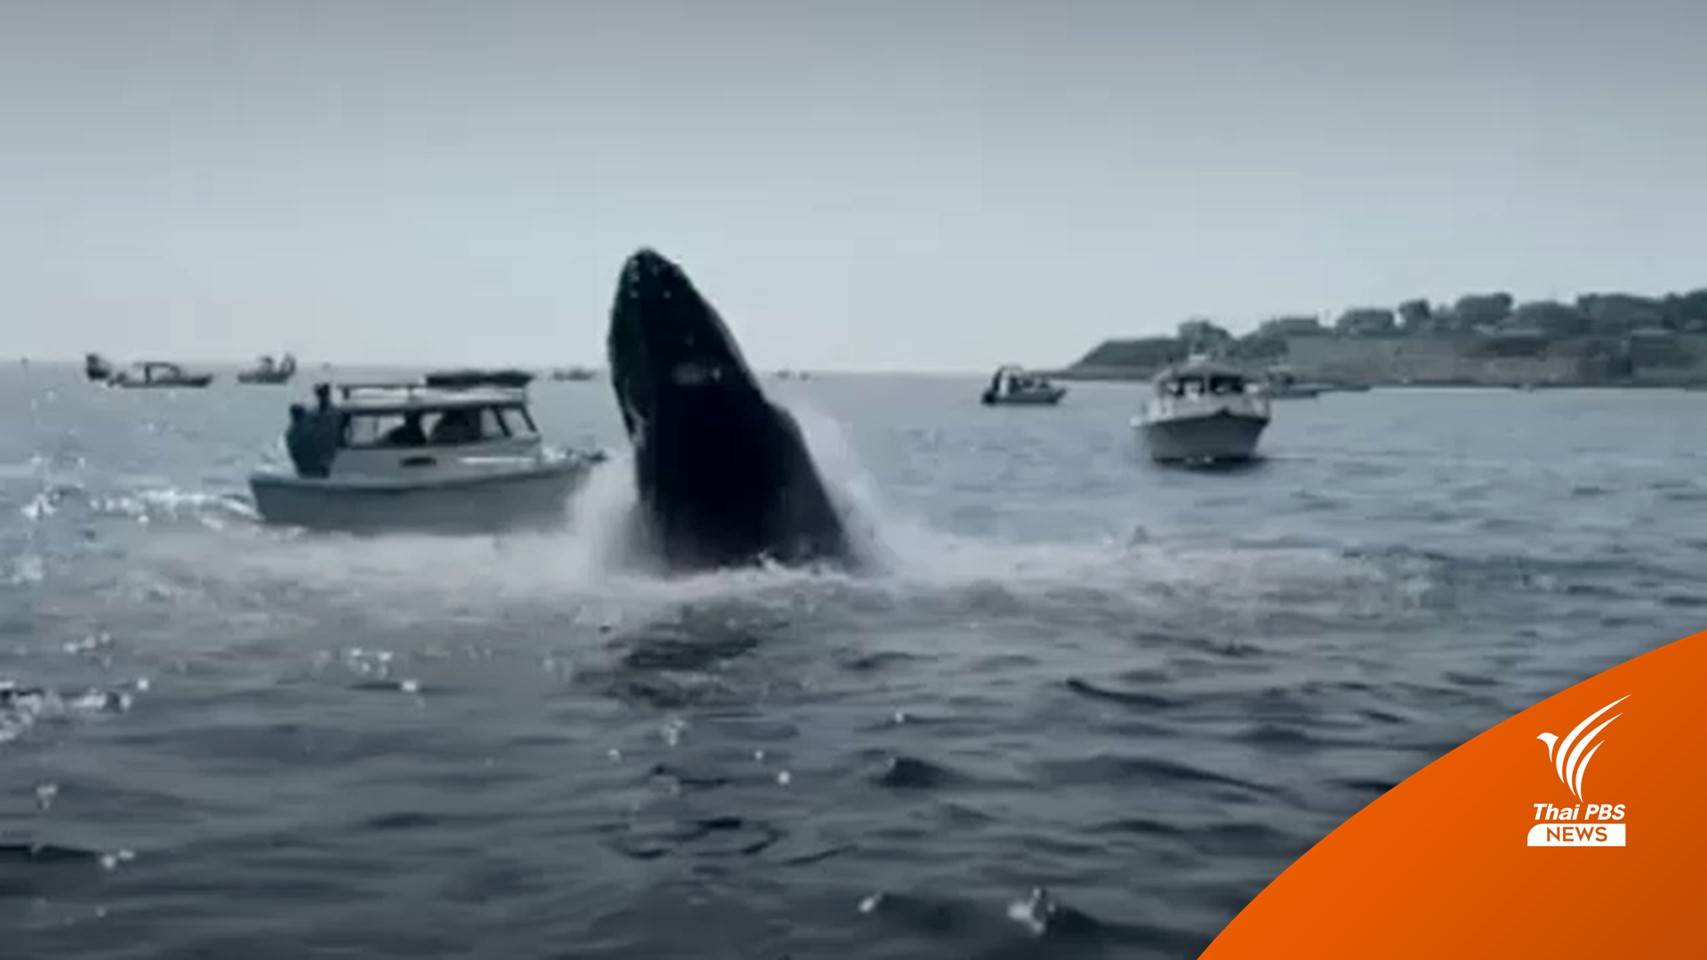 ระทึก! "วาฬหลังค่อม" โผล่ผิวน้ำกระแทกใส่เรือในสหรัฐฯ